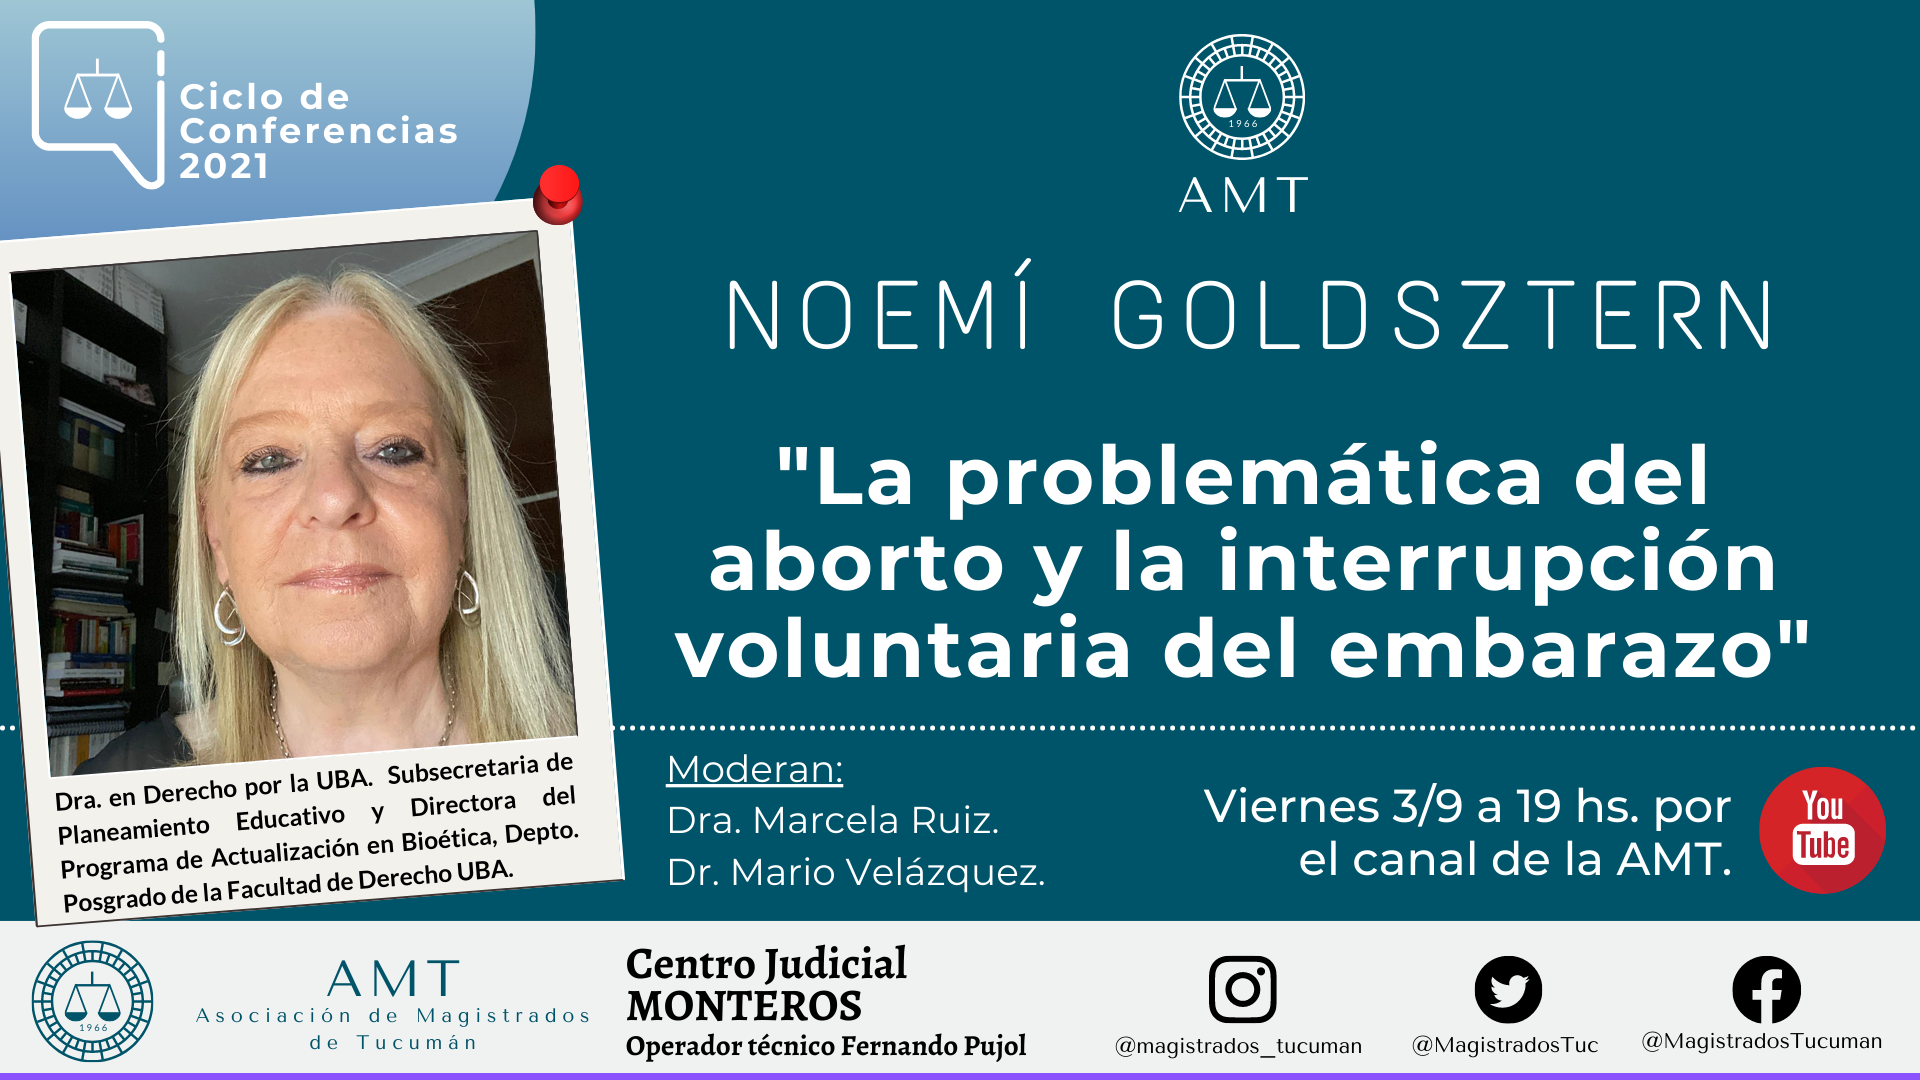 Vuelva a ver la conferencia de Noemí Goldsztern «La problemática del aborto y la IVE»